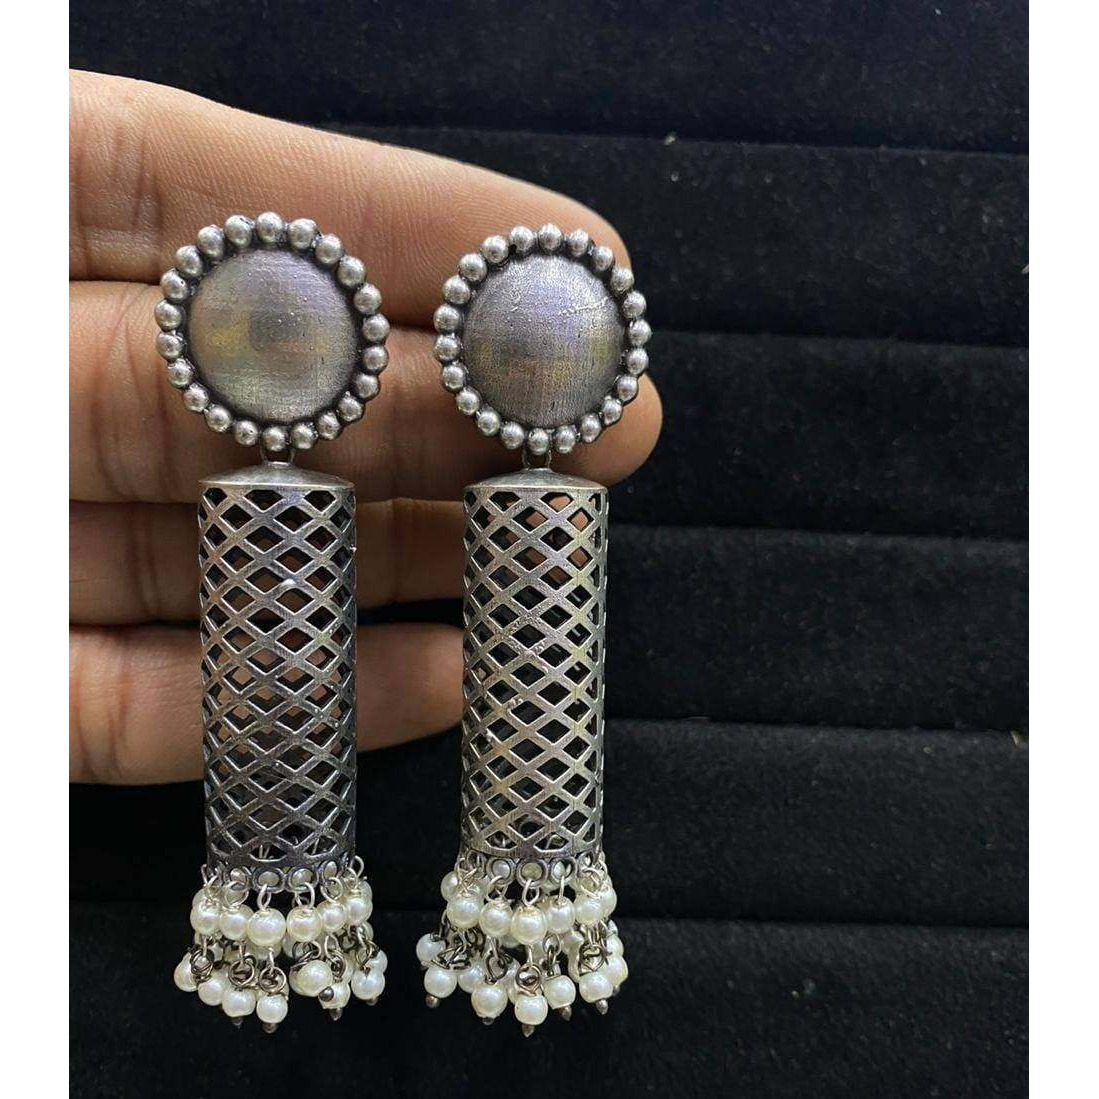 Silver look earrings